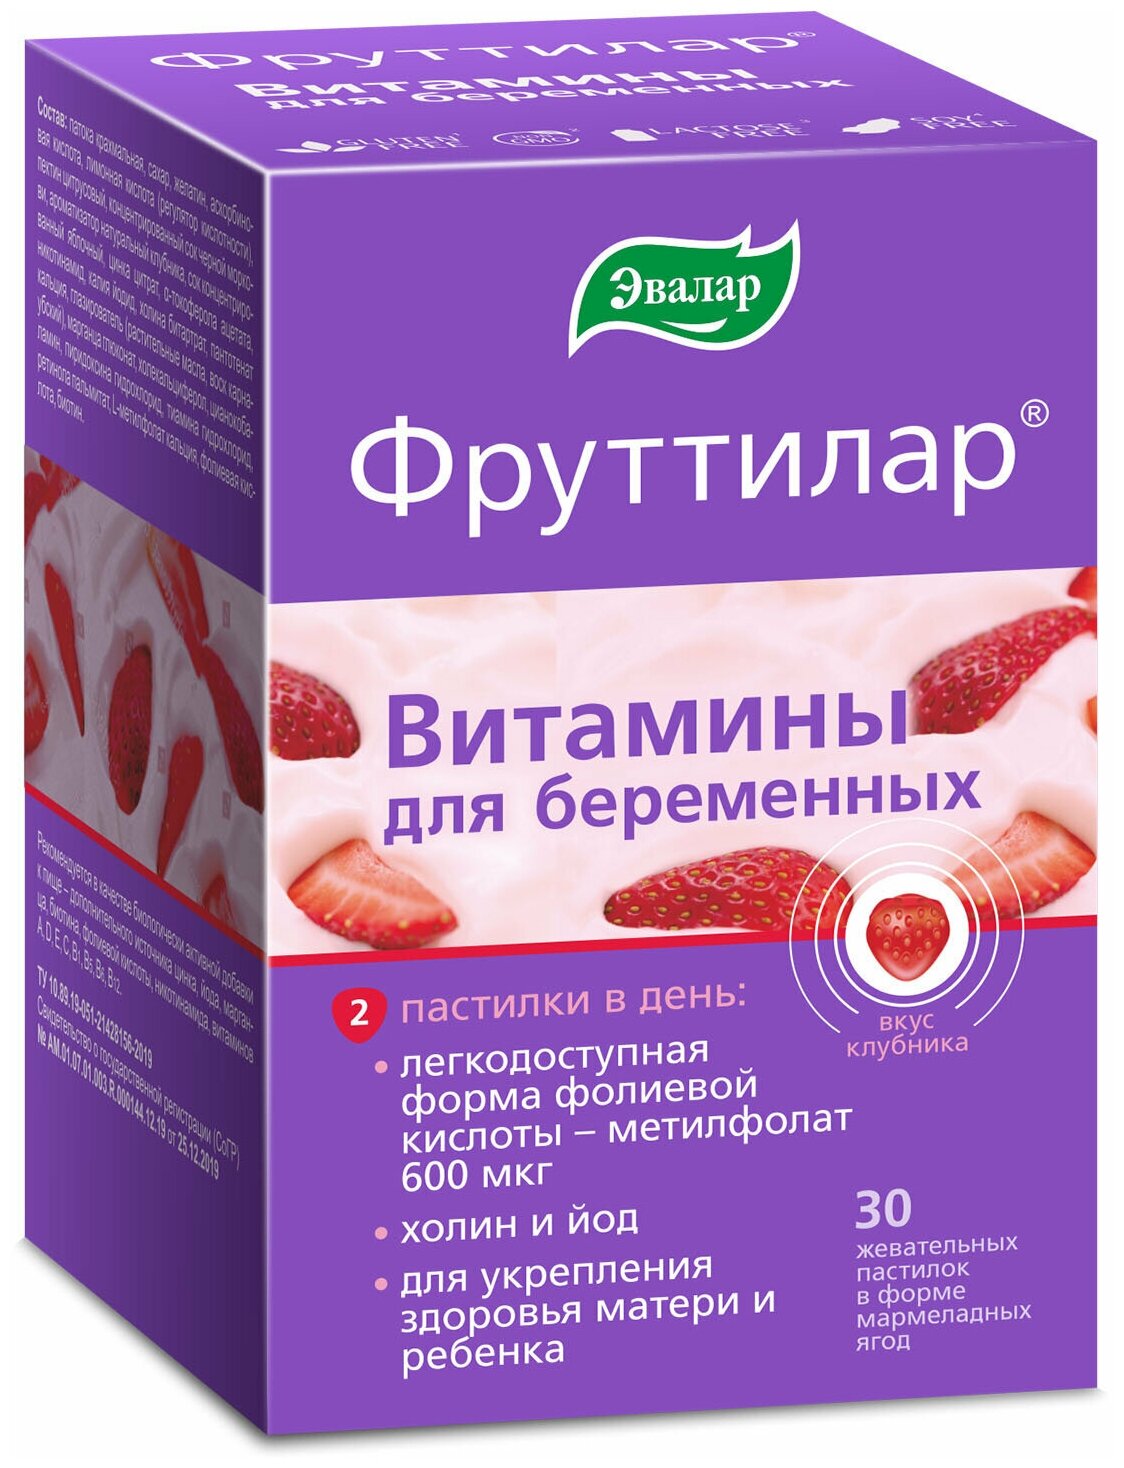 Фруттилар Витамины для беременных пастилки жев., 30 шт.